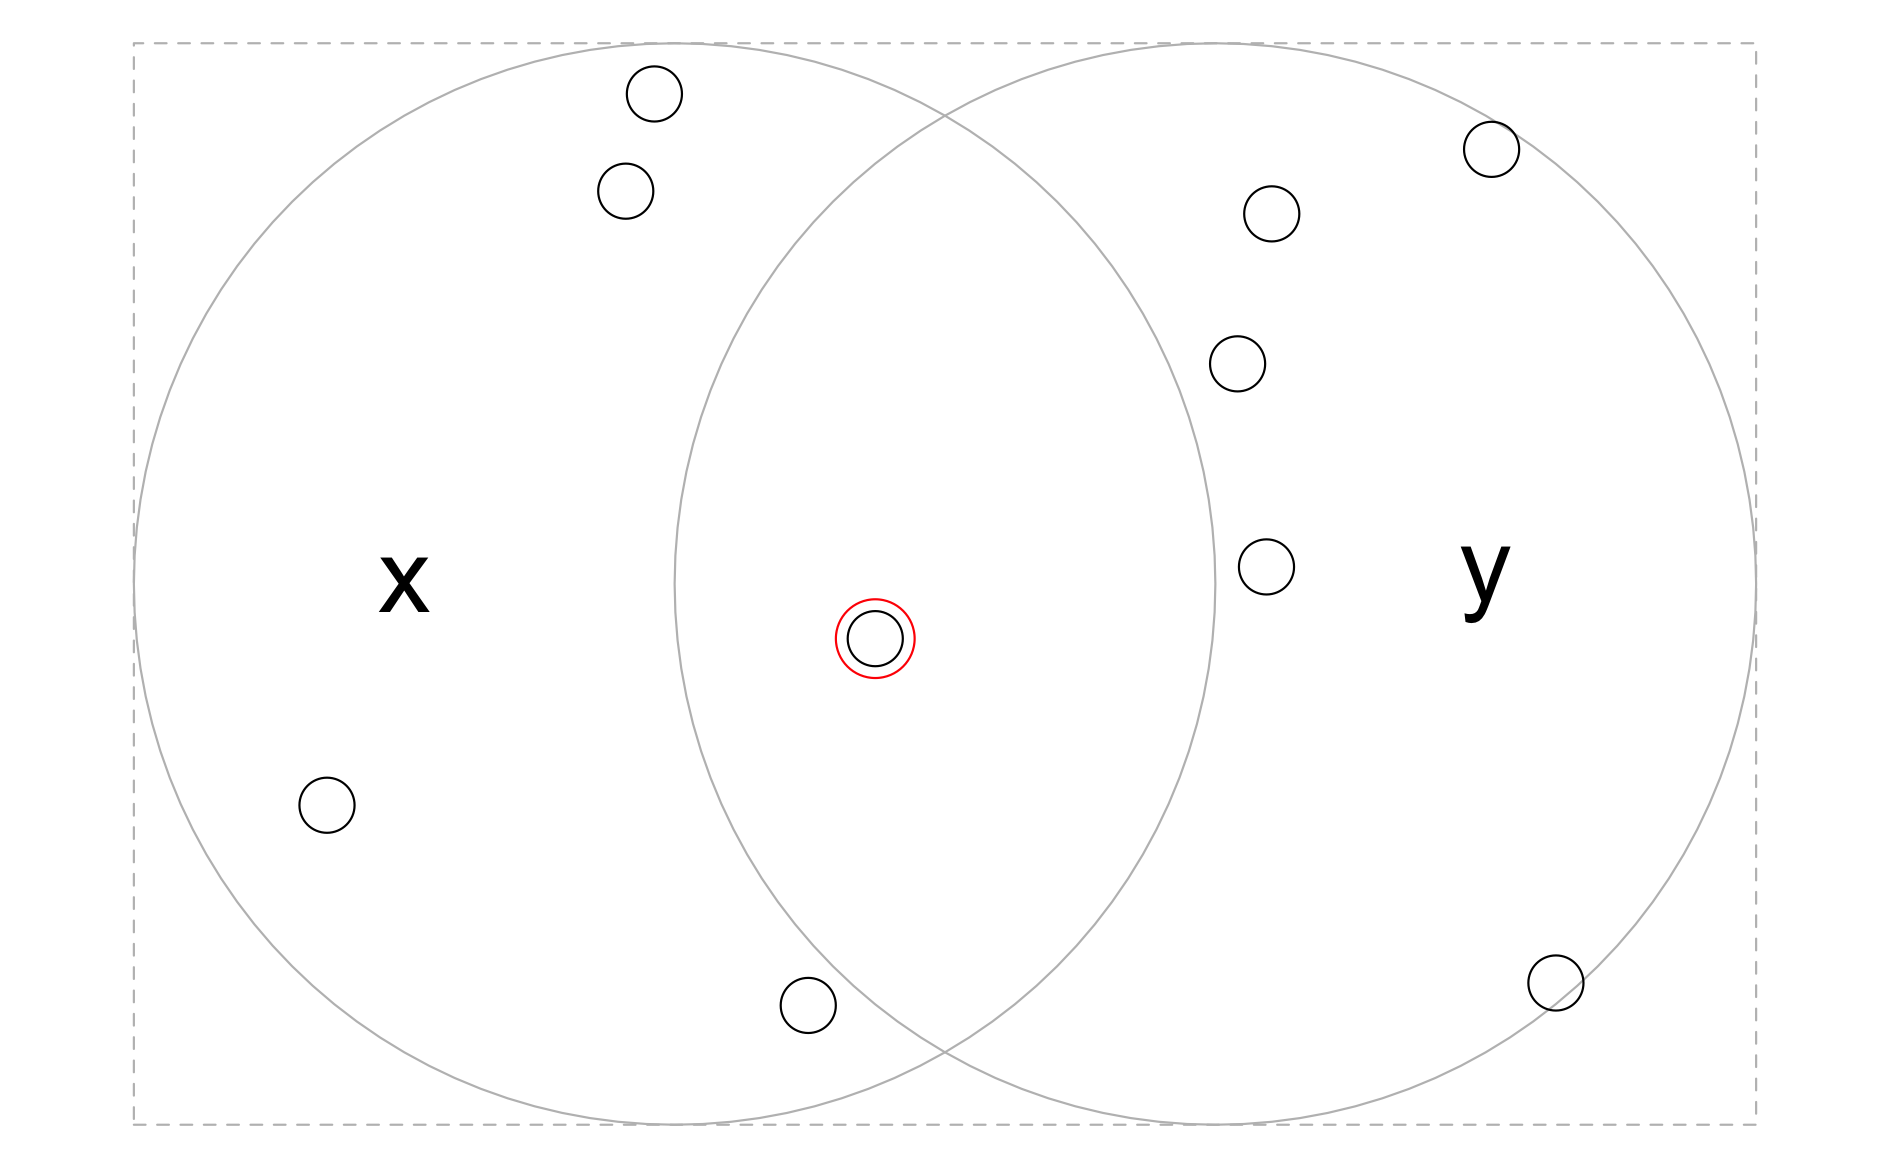 円x、yを囲むバウンディングボックス内にランダムに分布する点。オブジェクトx、yの両方と交差する点がハイライトされる。